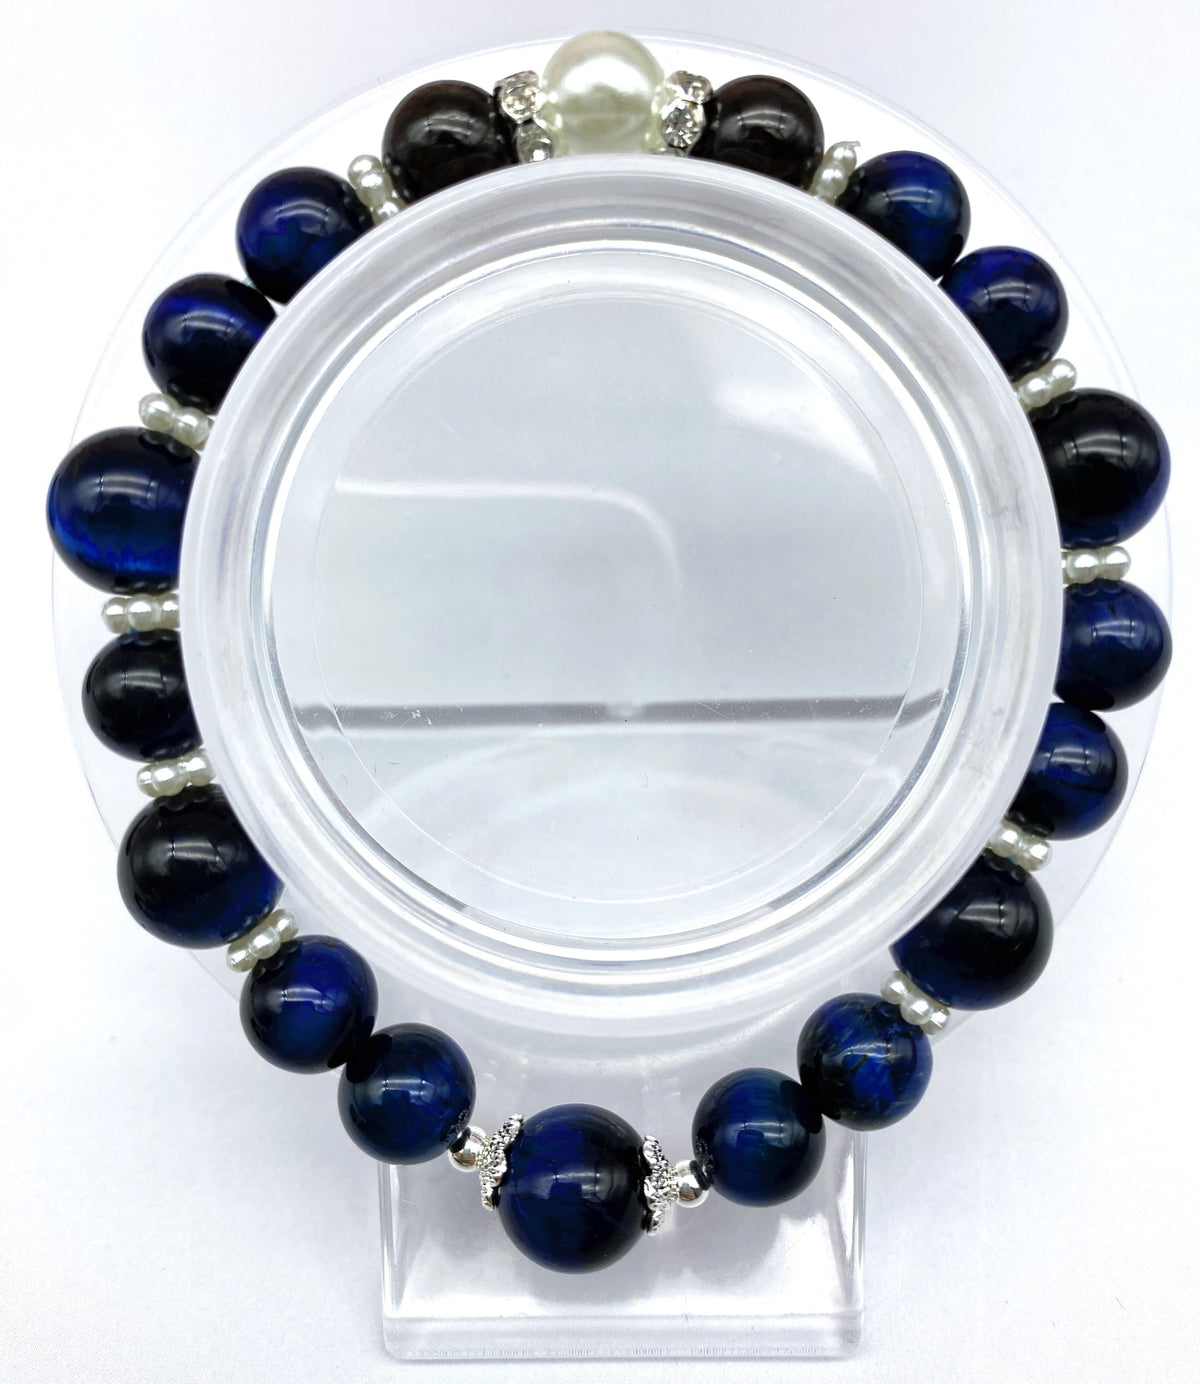 10mm Gorgeous Design Tiger's Eye Bracelet Collection Adjustable Bracelet Wealthy Stone Protection Bracelet for Men Women